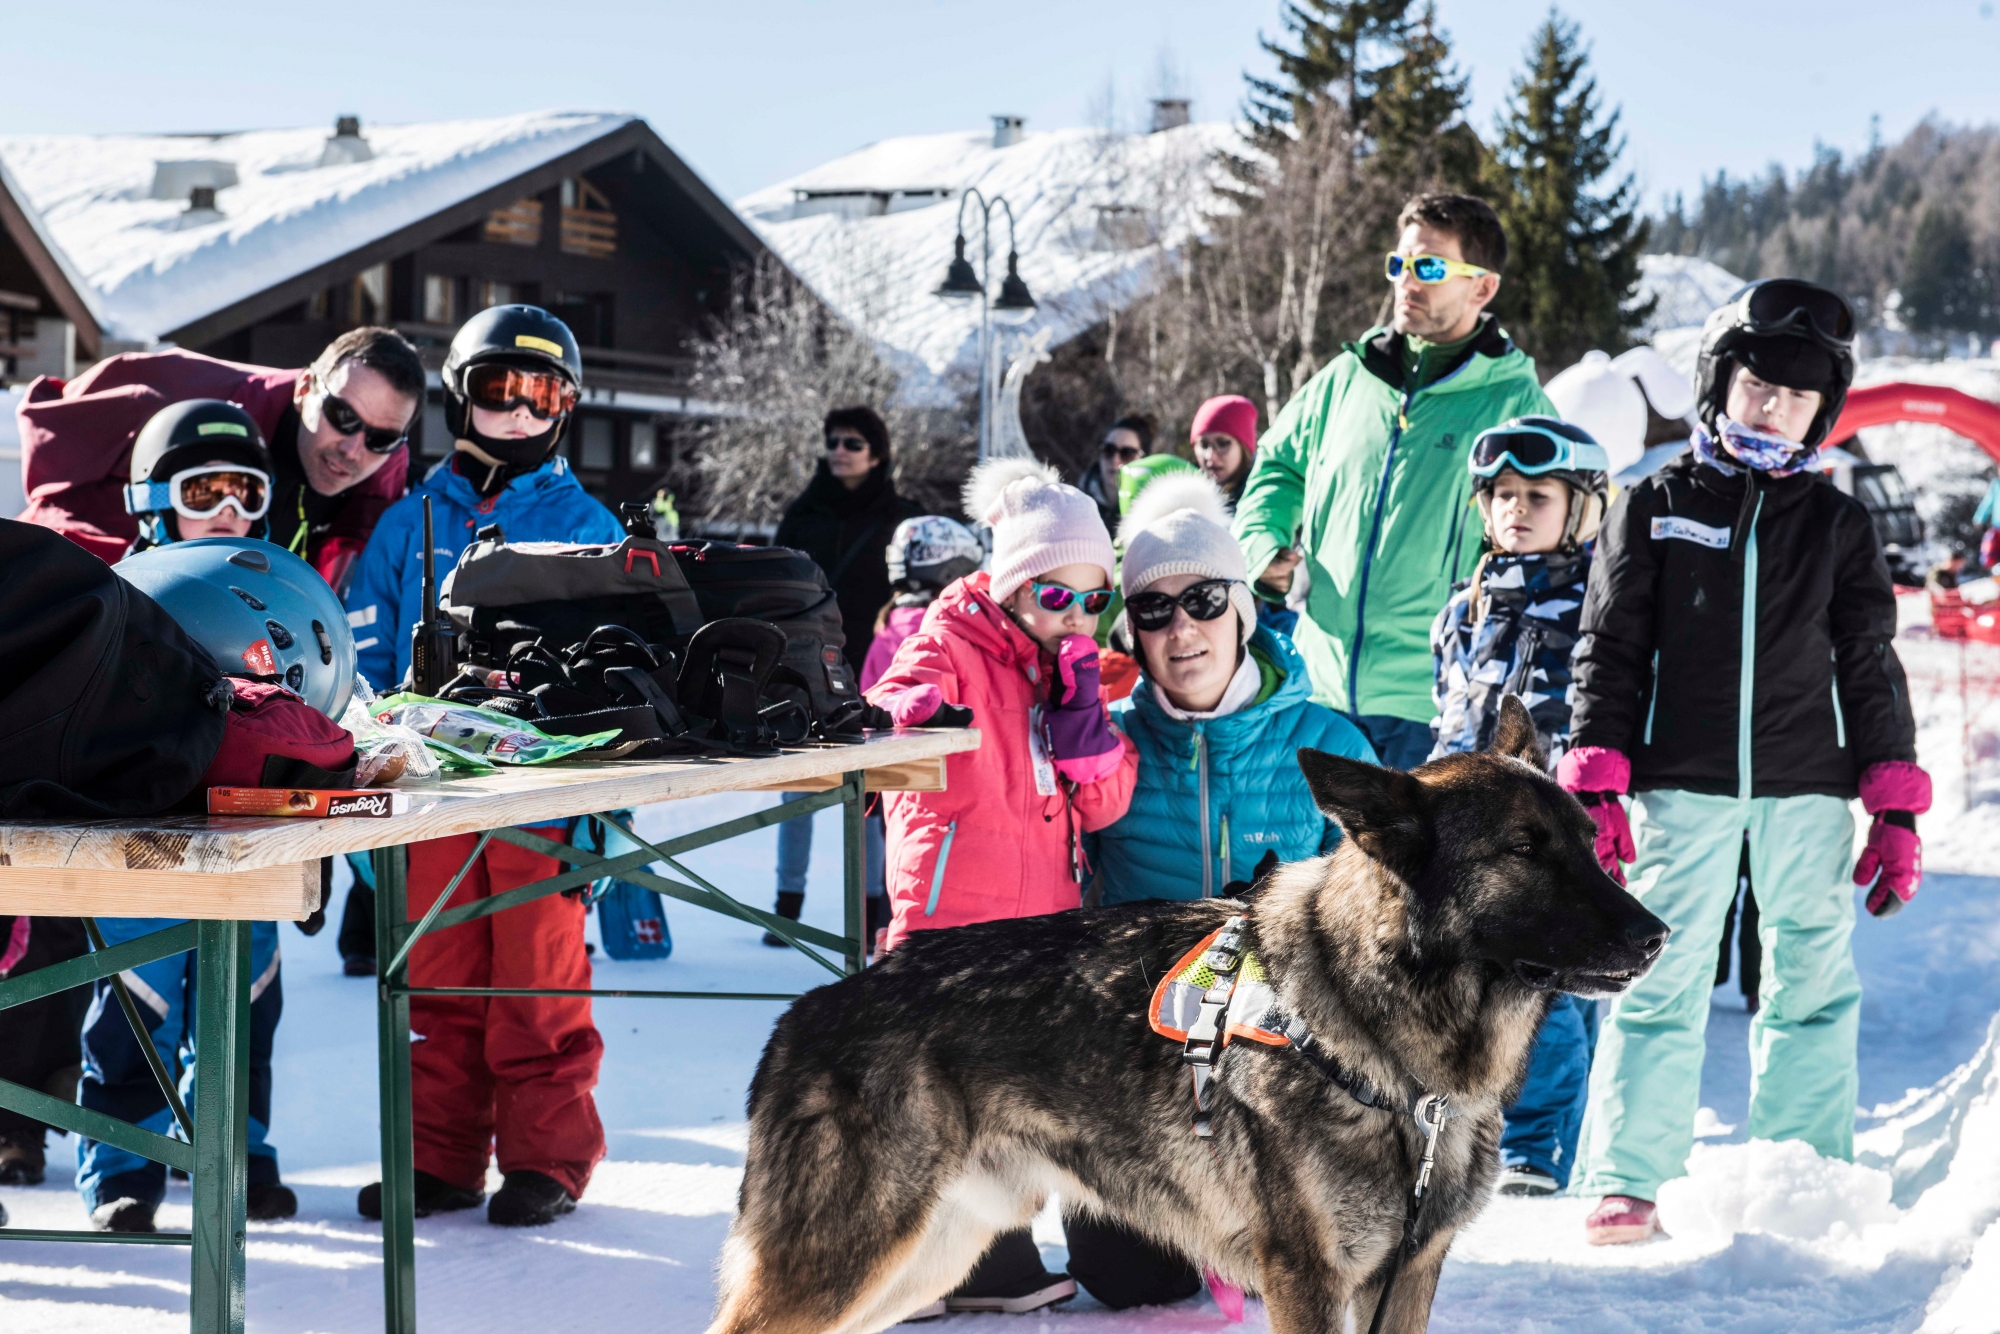 La 7ème édition de Festiâ¿Neige Anzère. Un événement qui propose sur la place du village des activités gratuites pour les enfants. Initiation au ski, snowboard et curling et des ateliers de sensibilisation aux sports d'hivers.